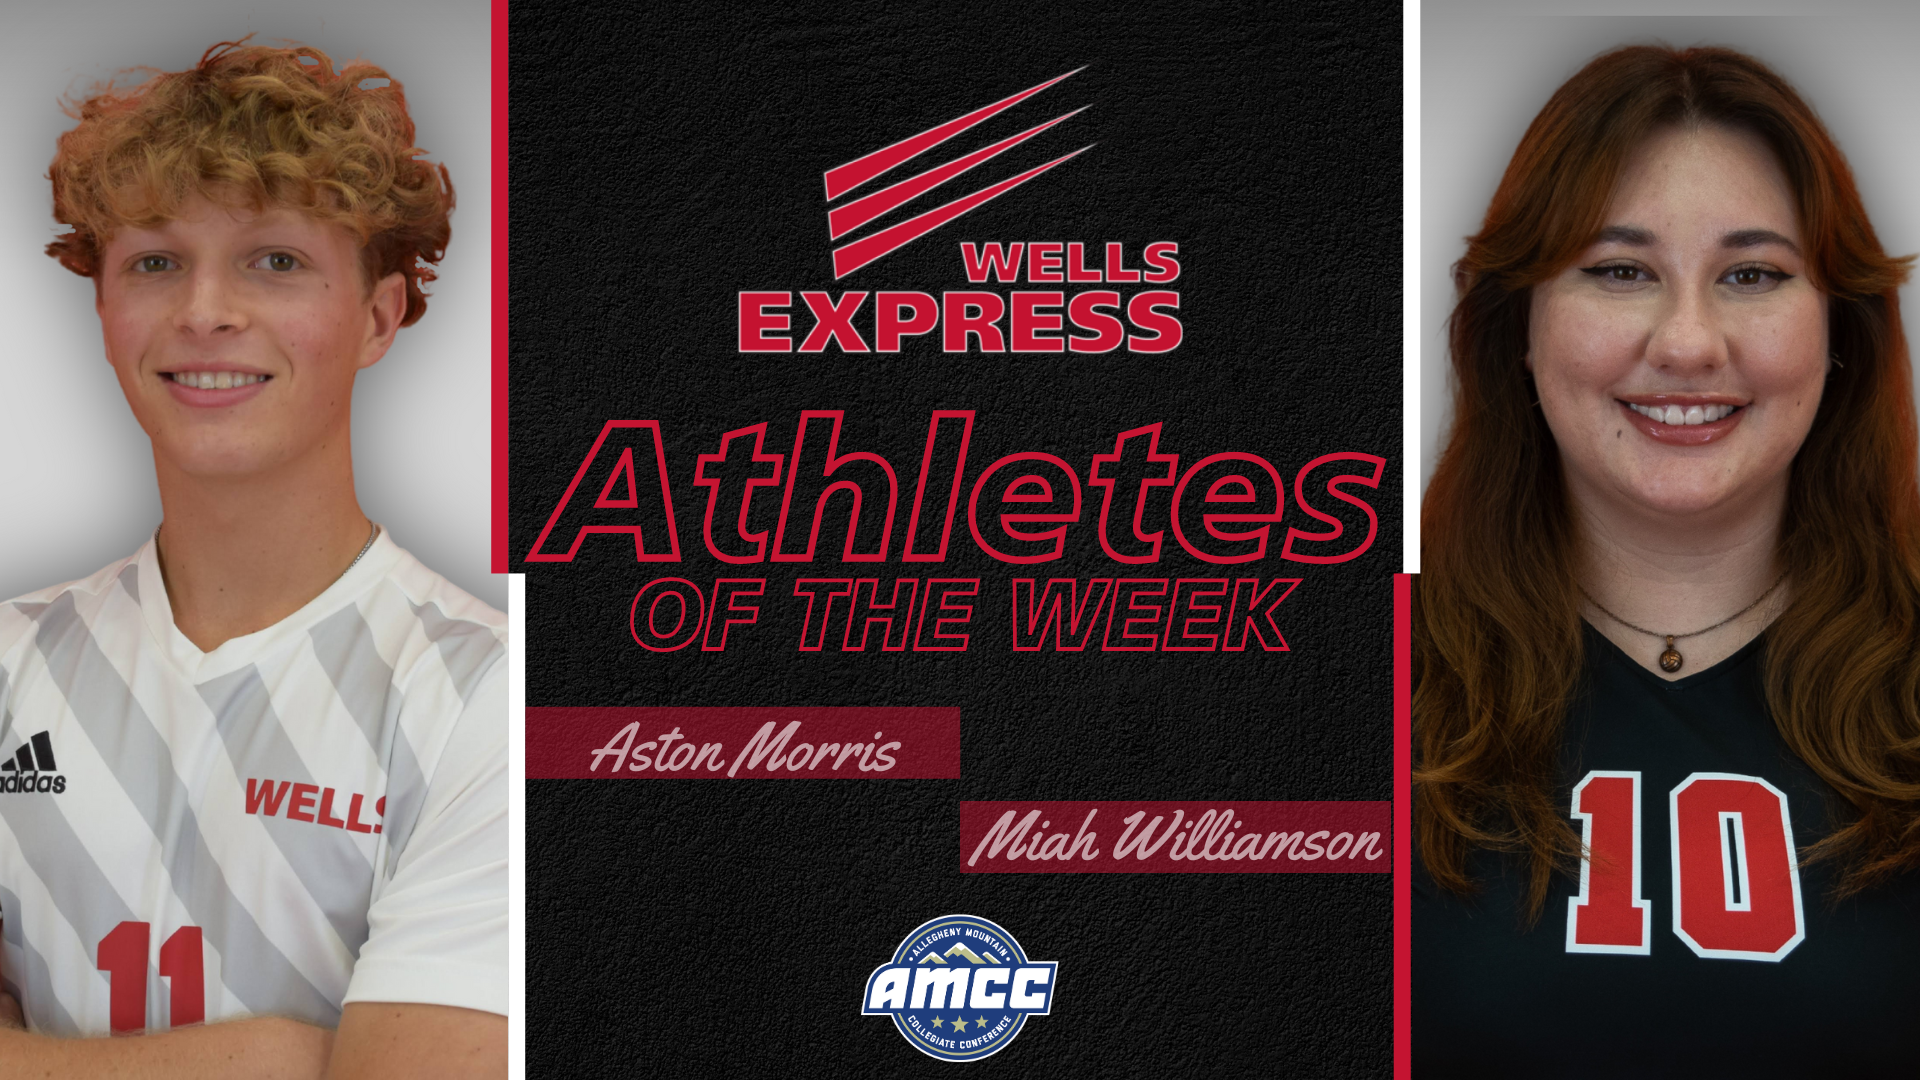 Ashton Morris and Miah Williamson athletes of the week